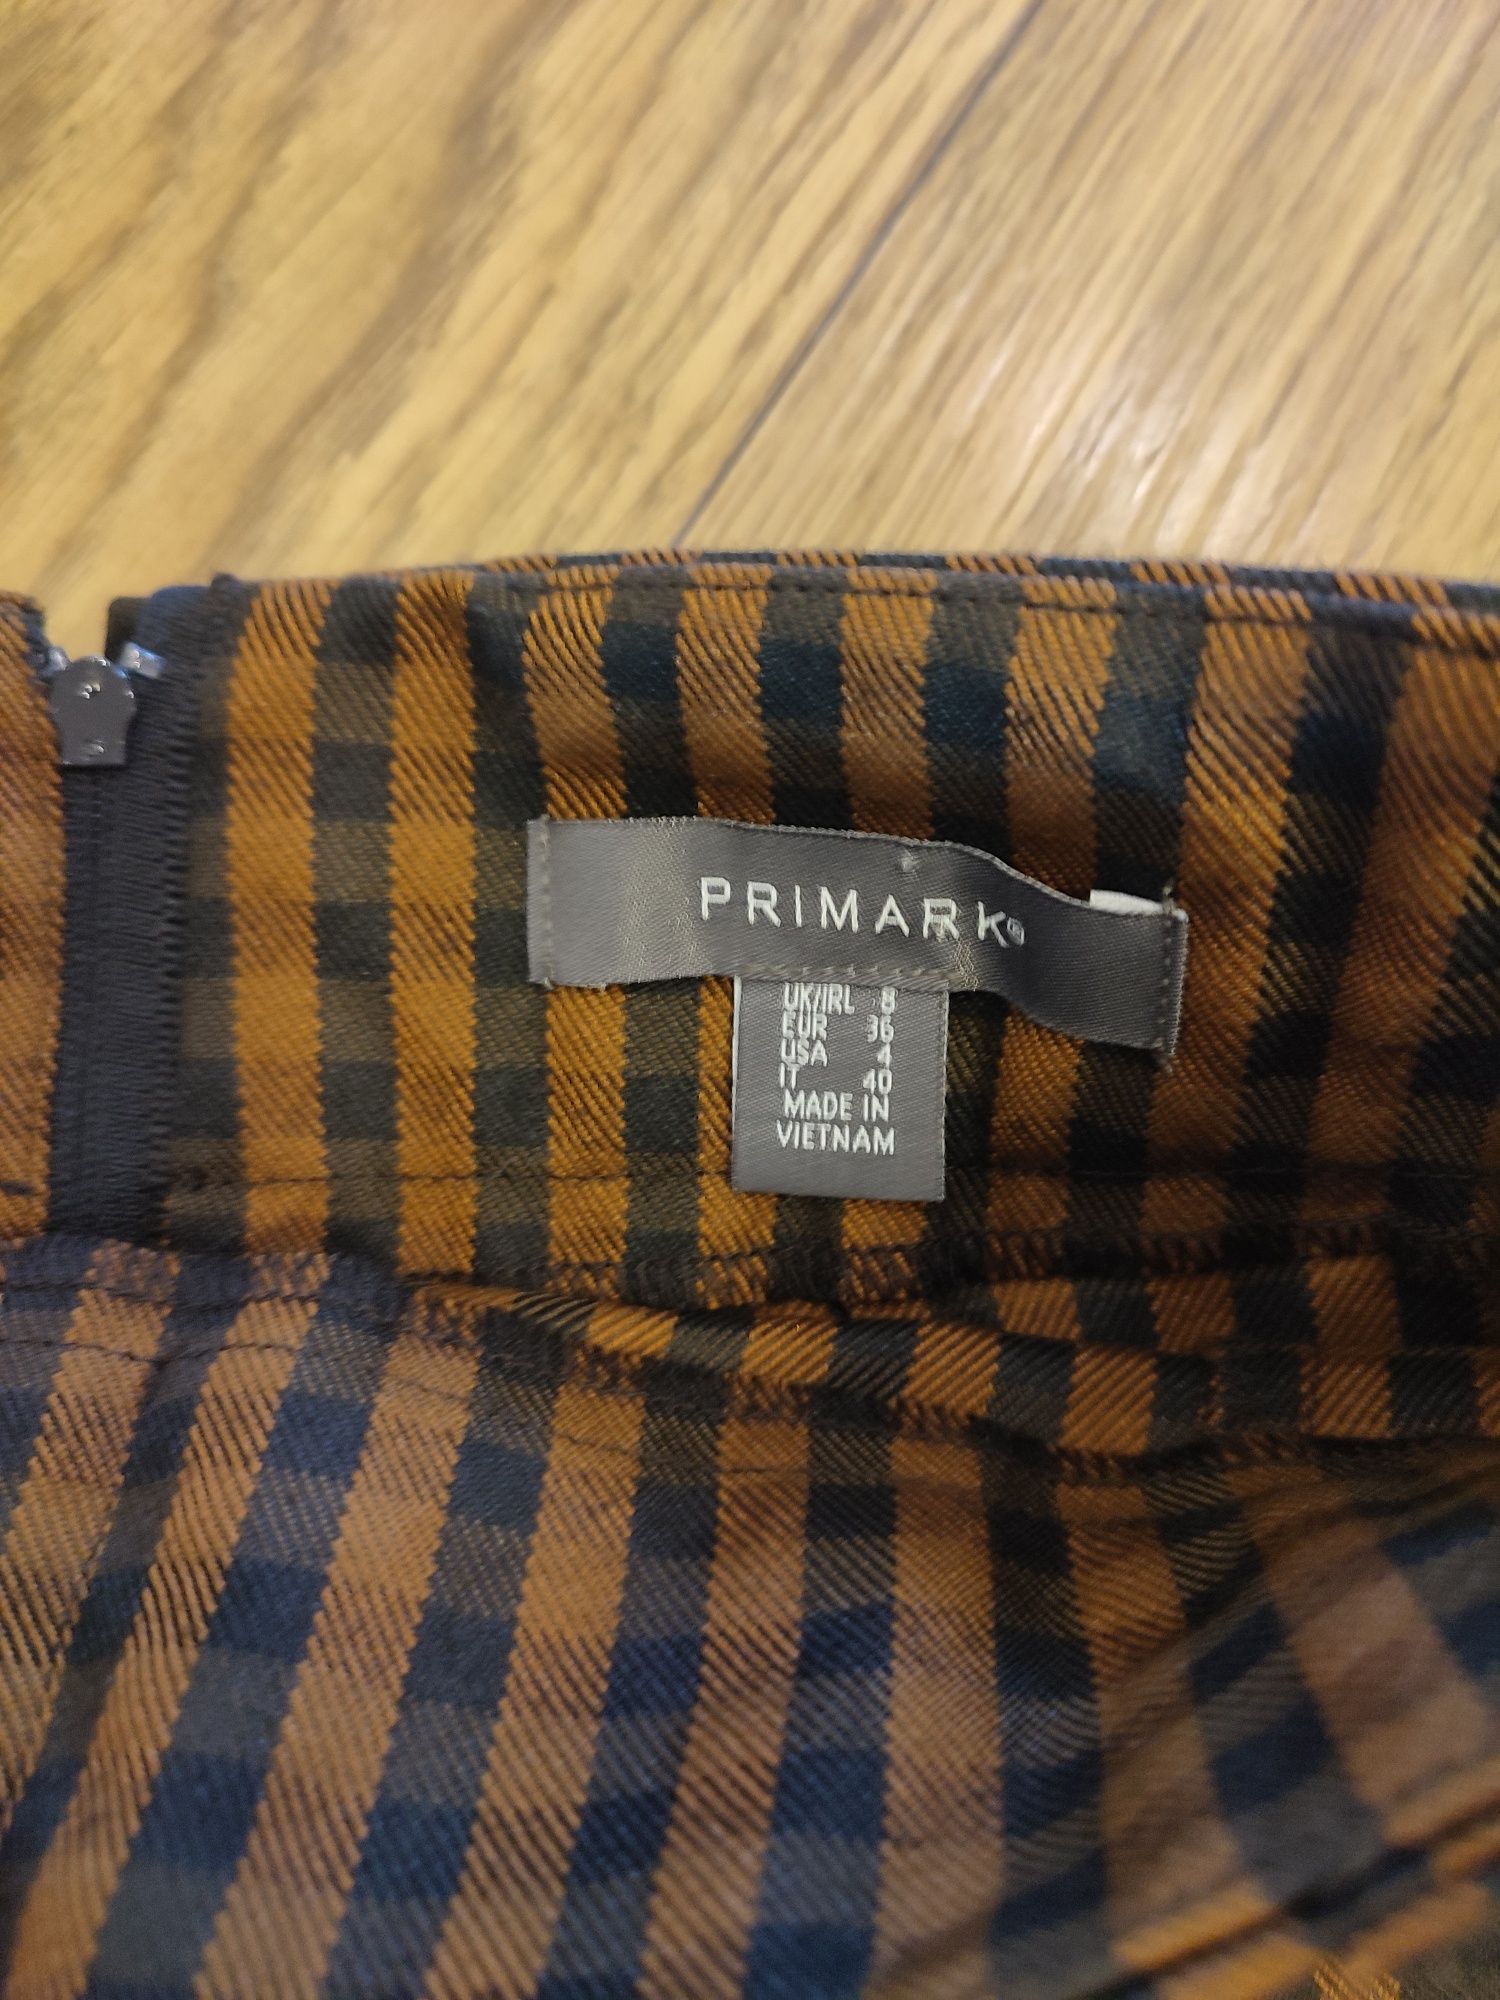 Spódnica Primark rozmiar S krata vintage